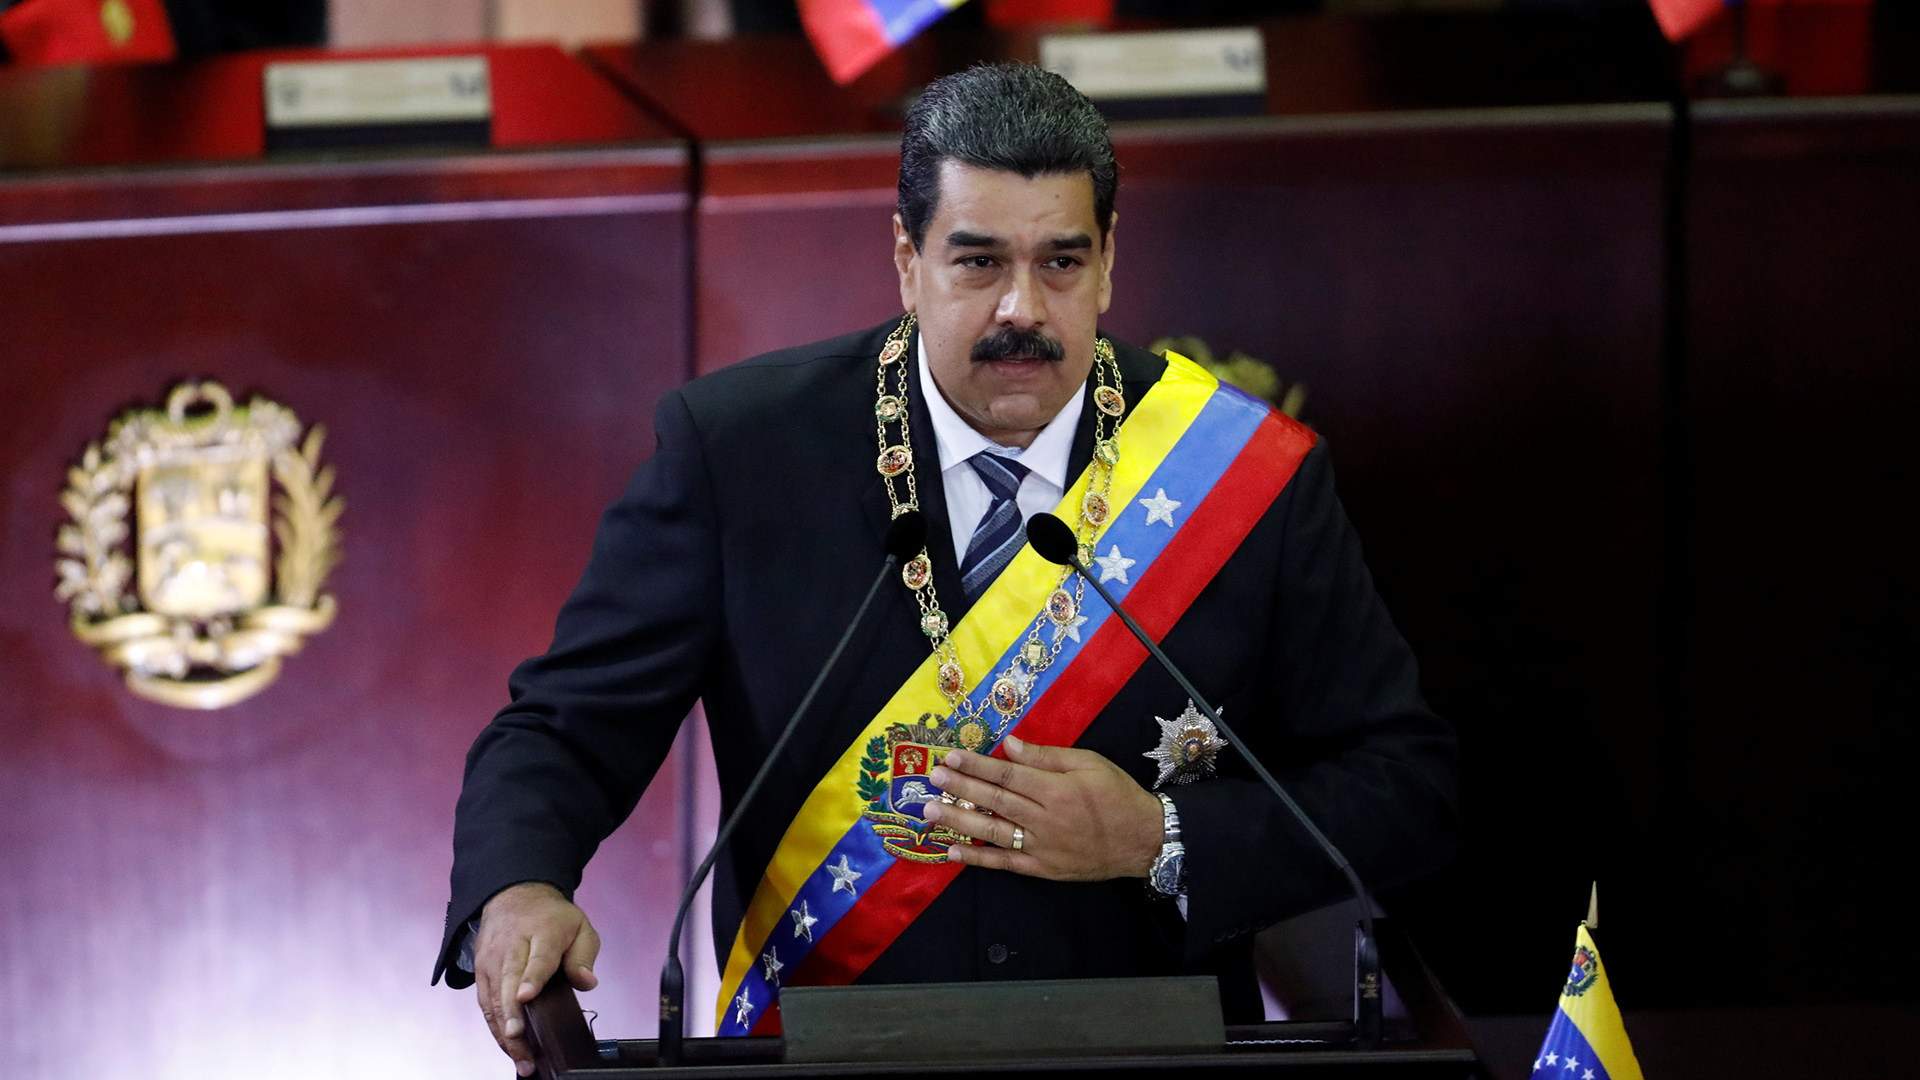 Nicolas-Maduro-Corte-Suprema-de-Justicia-Caracas-2018-3